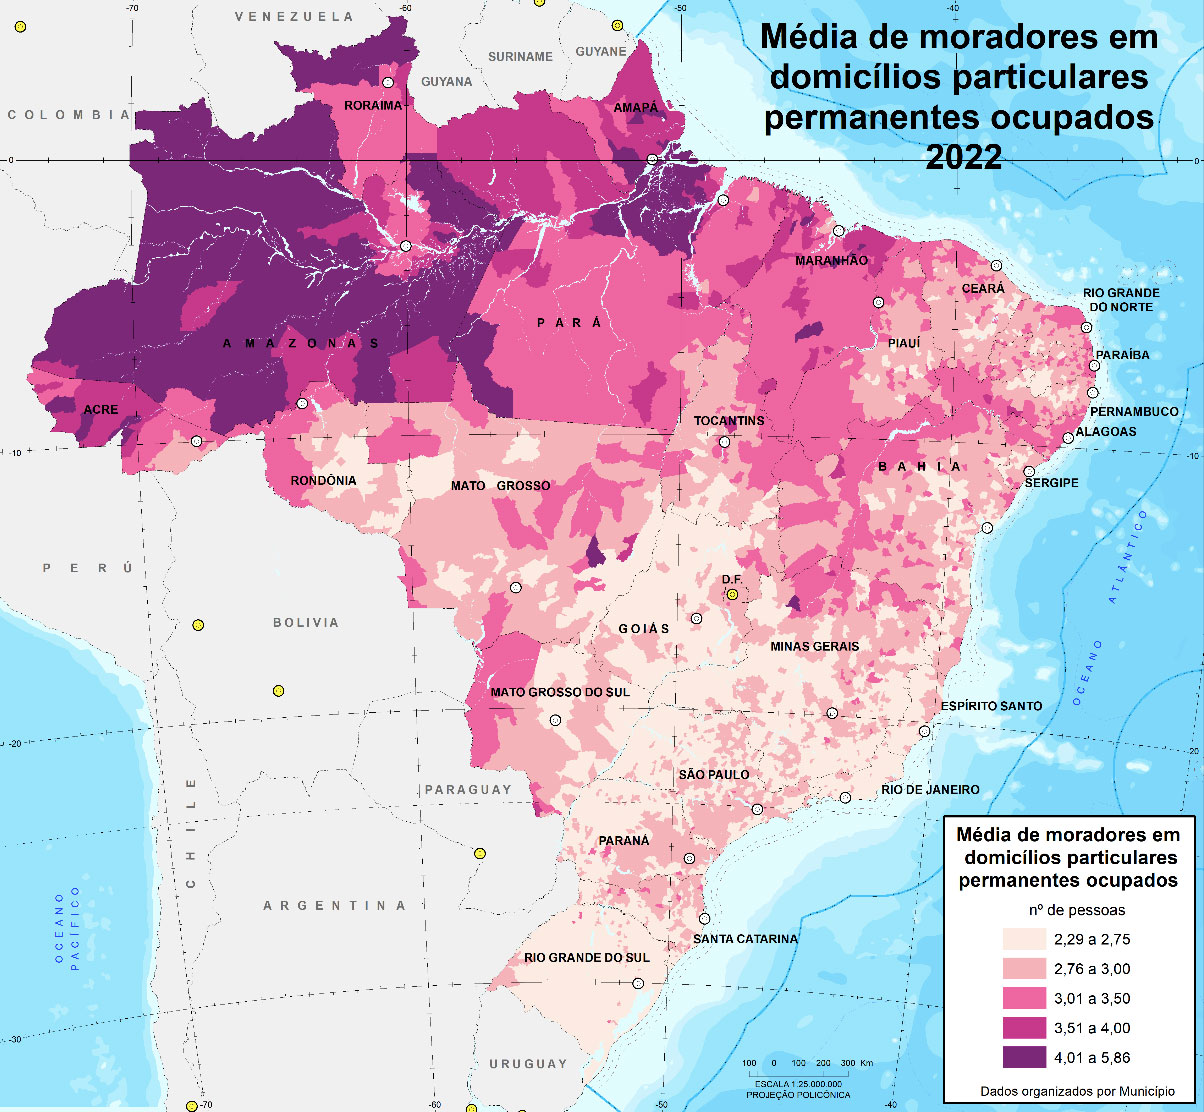 Média de moradores em domicílios particulares permanentes ocupados, Brasil e municípios, 2022.